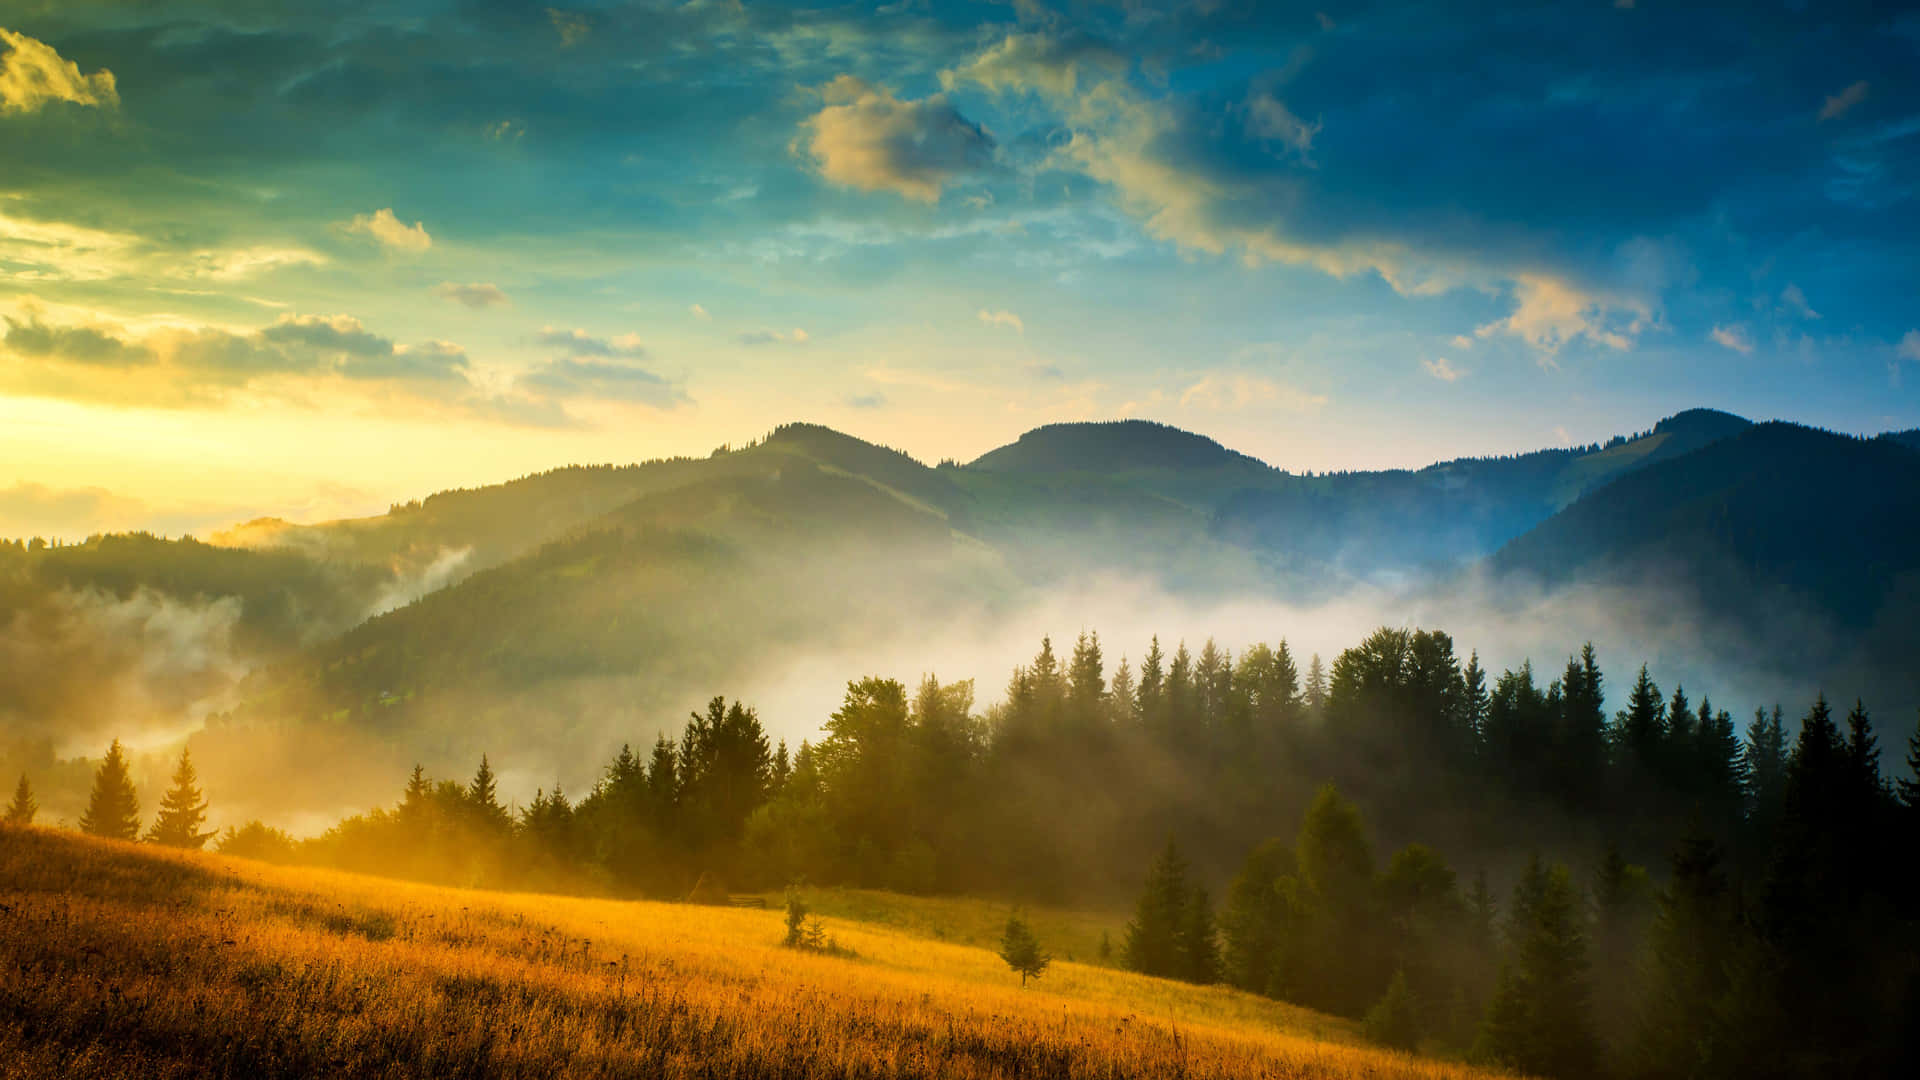 Carpathian Mountain Range 4K Ultra HD Landscape Wallpaper